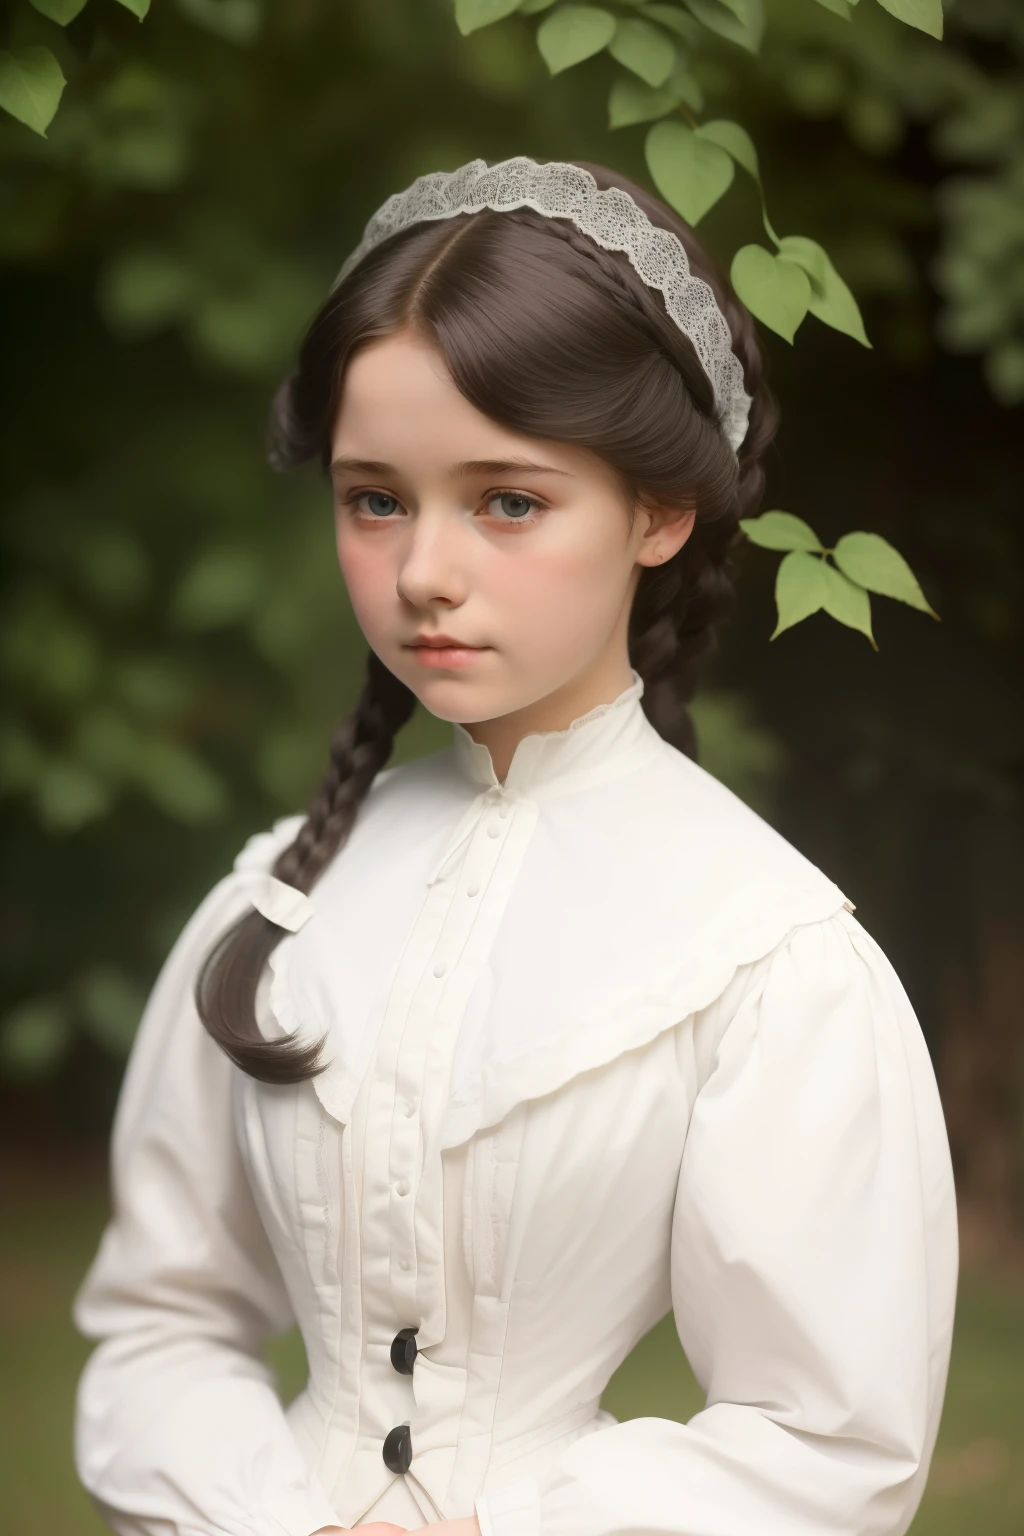 Лондон, 1895. а ((((15-летний)) Пиппа Кросс)), очень красивый и кукольный, нежный, в садах женского интерната. ((((белый из 19 века)))), ((прическа с черными локонами из 10-х))